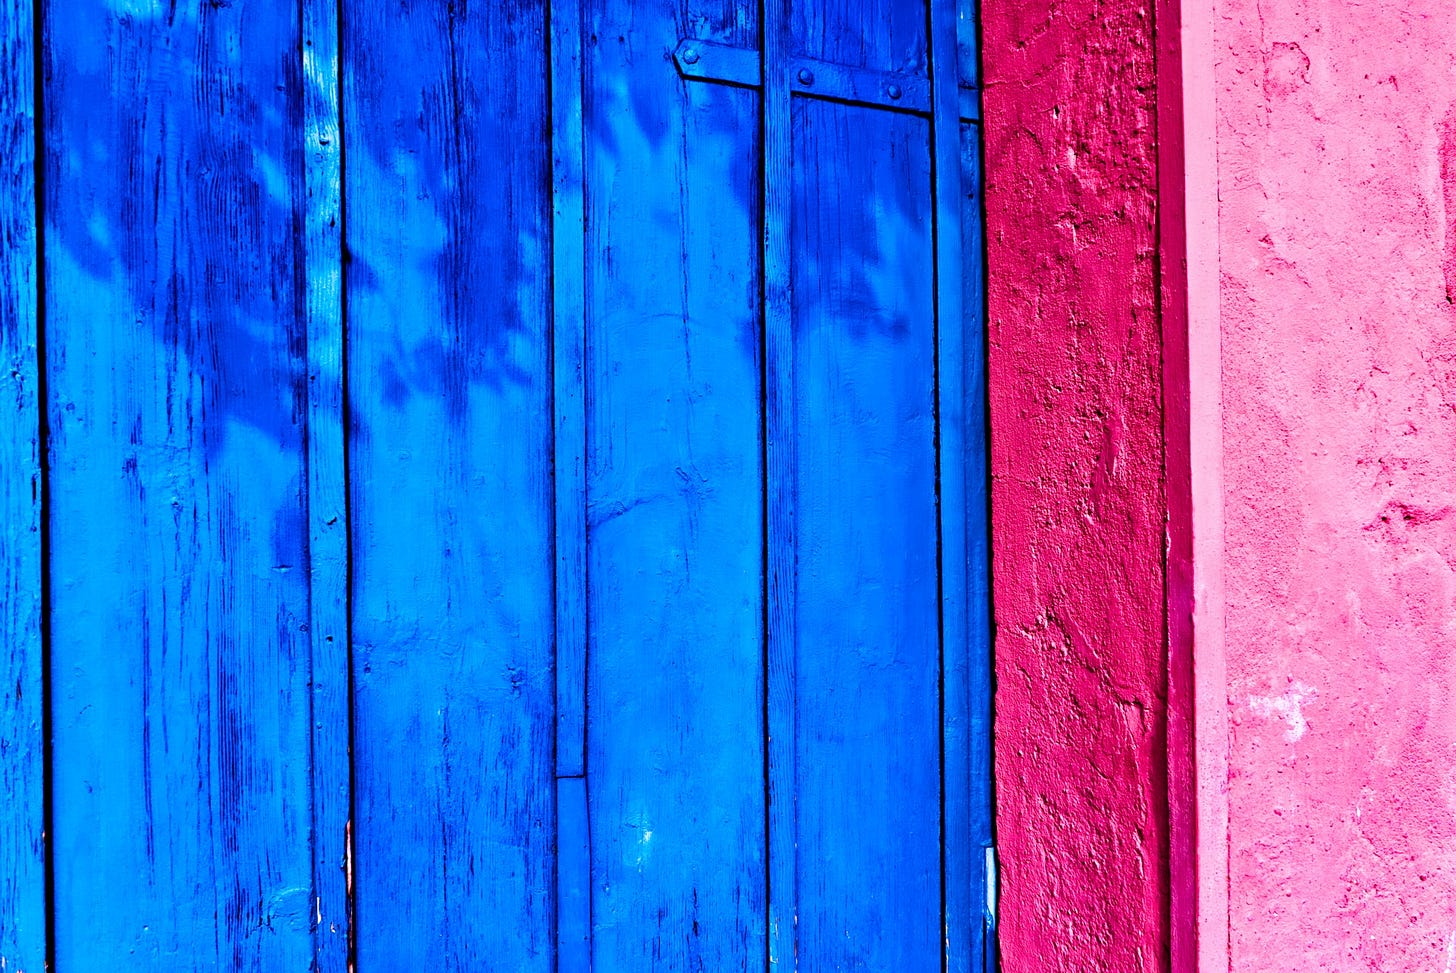 Dettaglio di una porta di legno colorata per metà di blu e per metà di rosa.